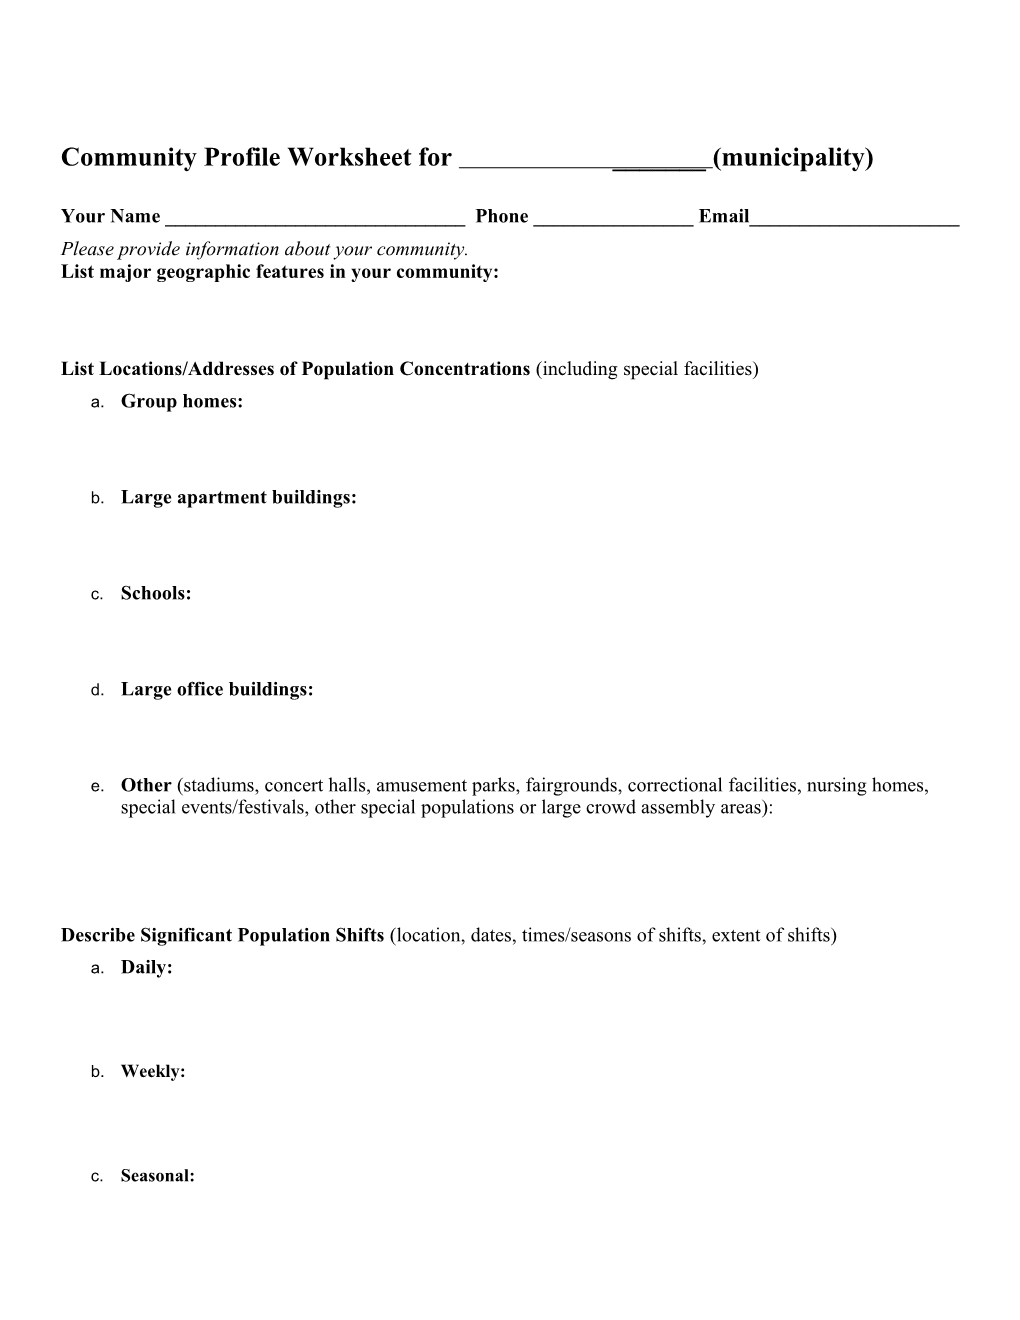 Community Profile Worksheet for Covert Township, Van Buren County